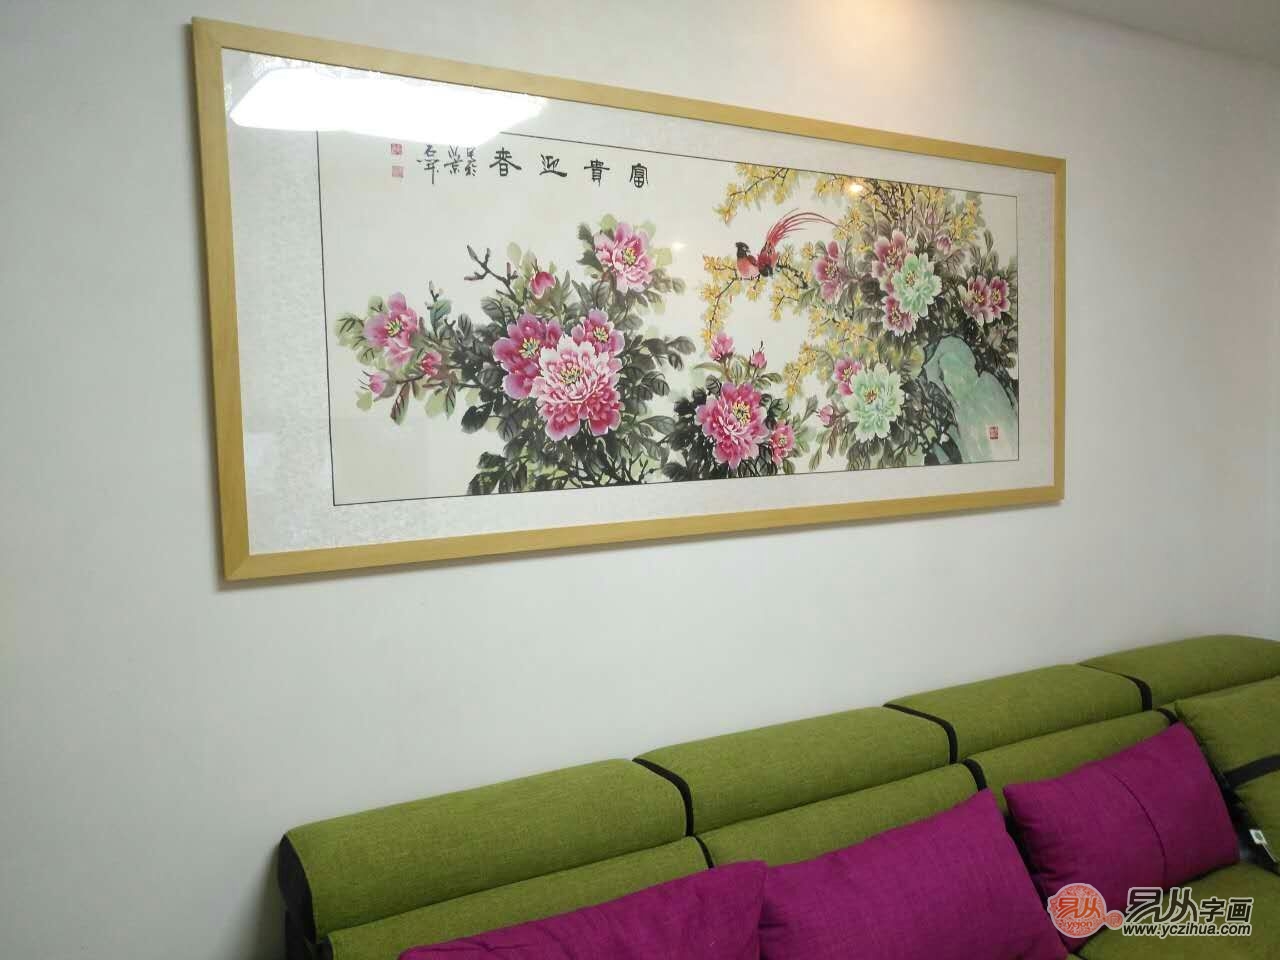 北京哪有卖客厅用的装饰画的?